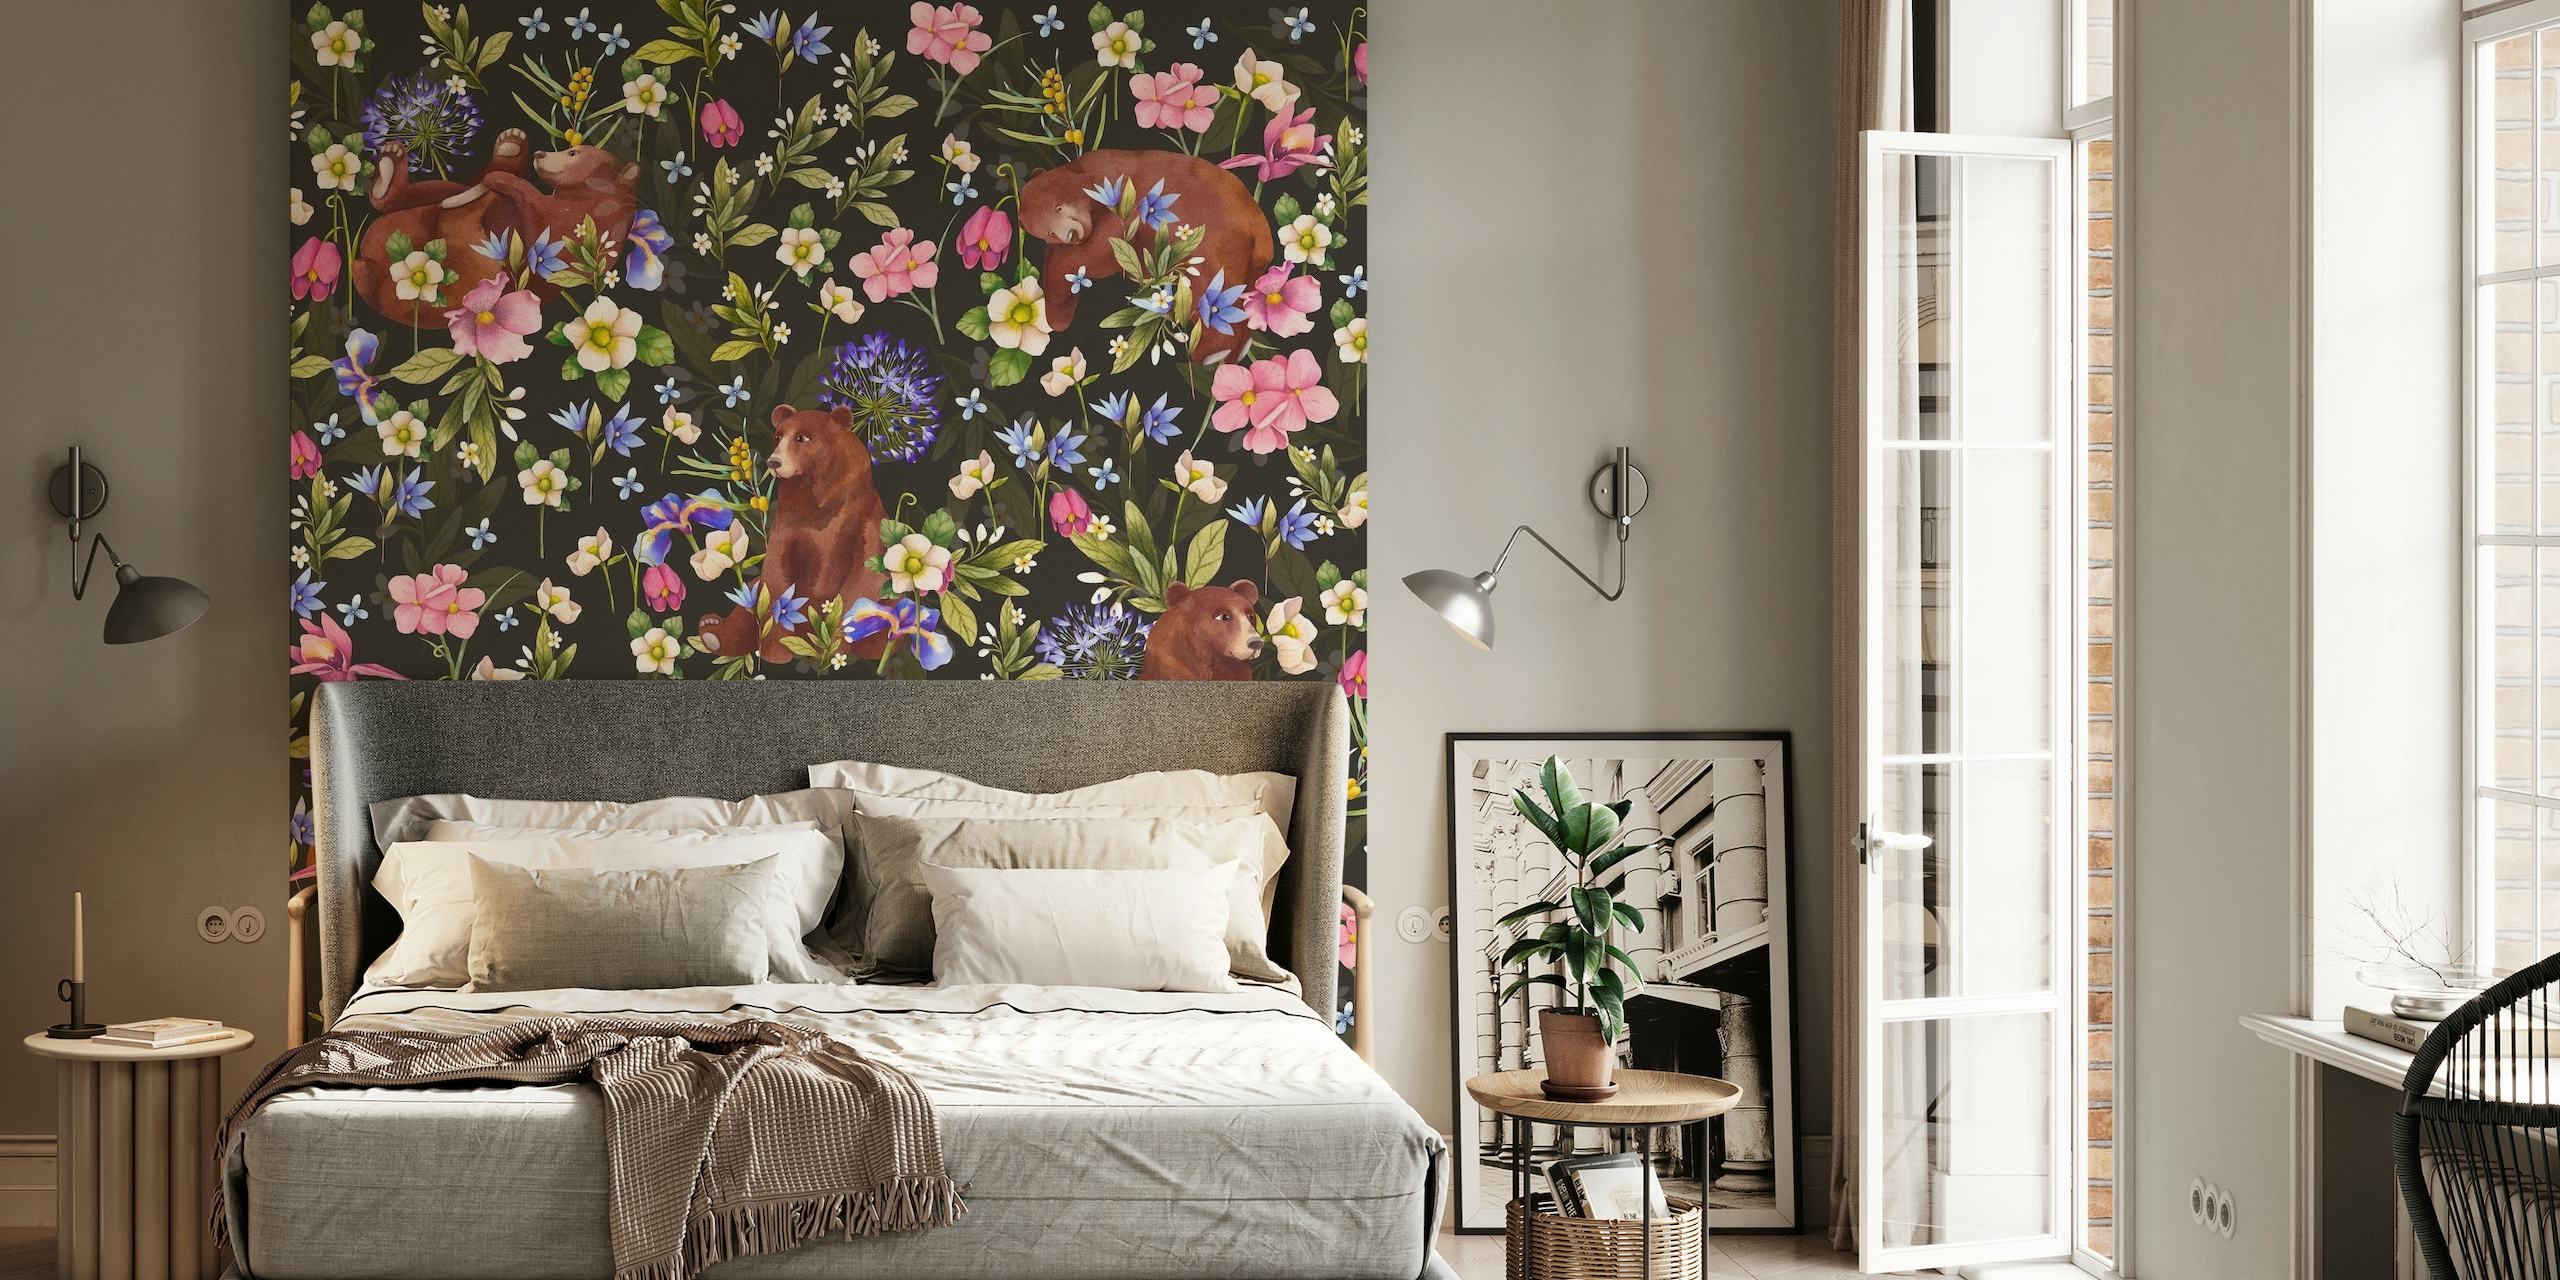 Bears in flowers wallpaper